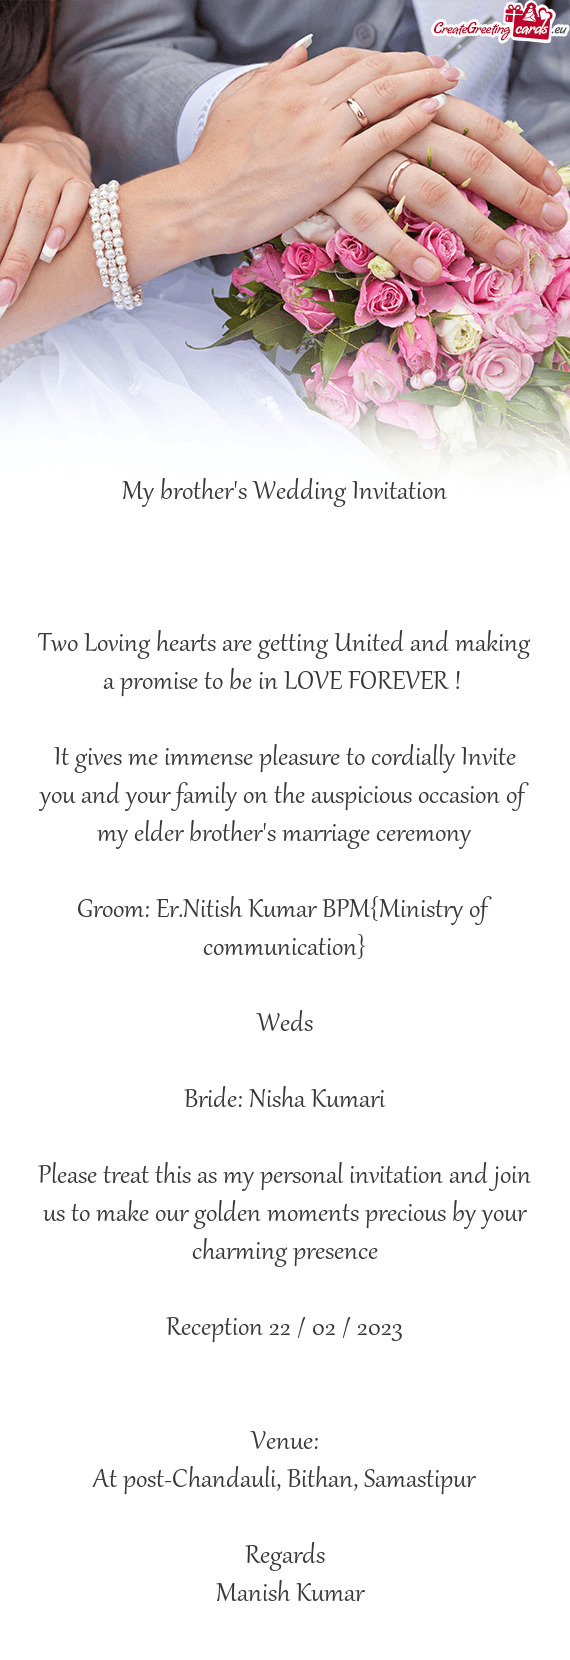 Groom: Er.Nitish Kumar BPM{Ministry of communication}